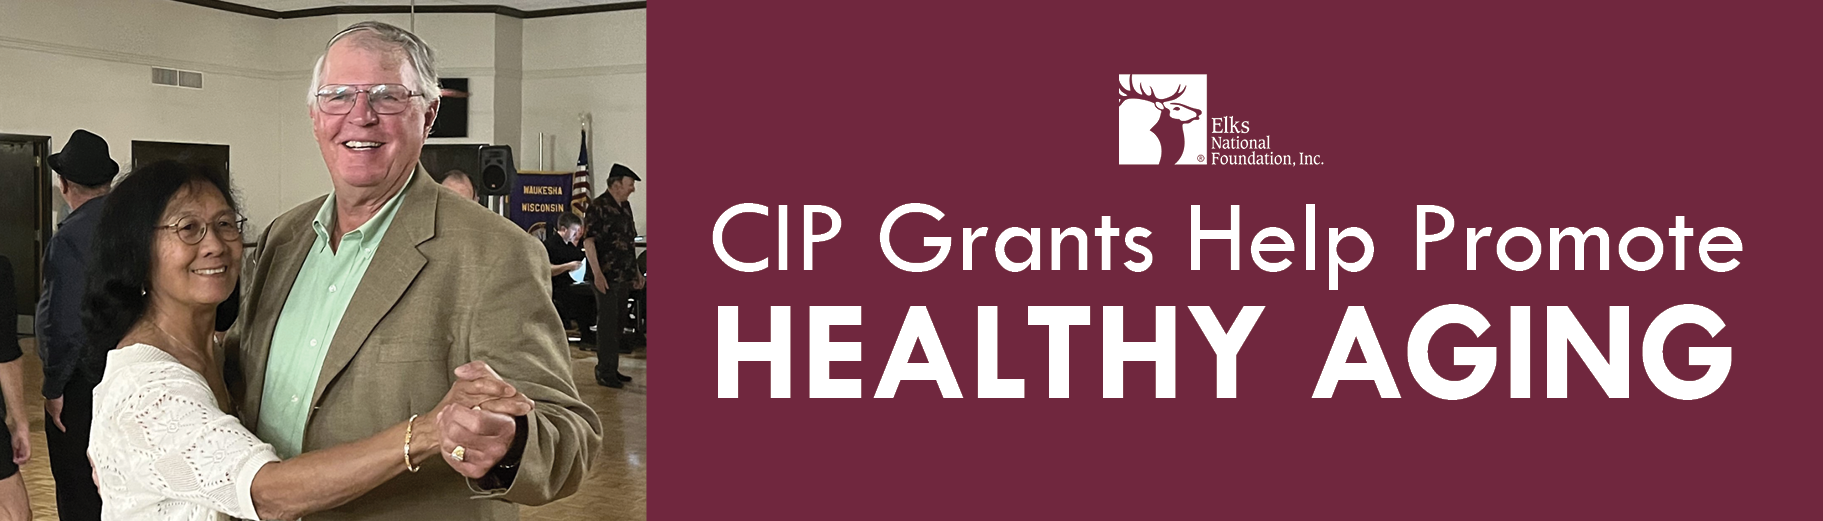 CIP Grants Promote Healthy Aging